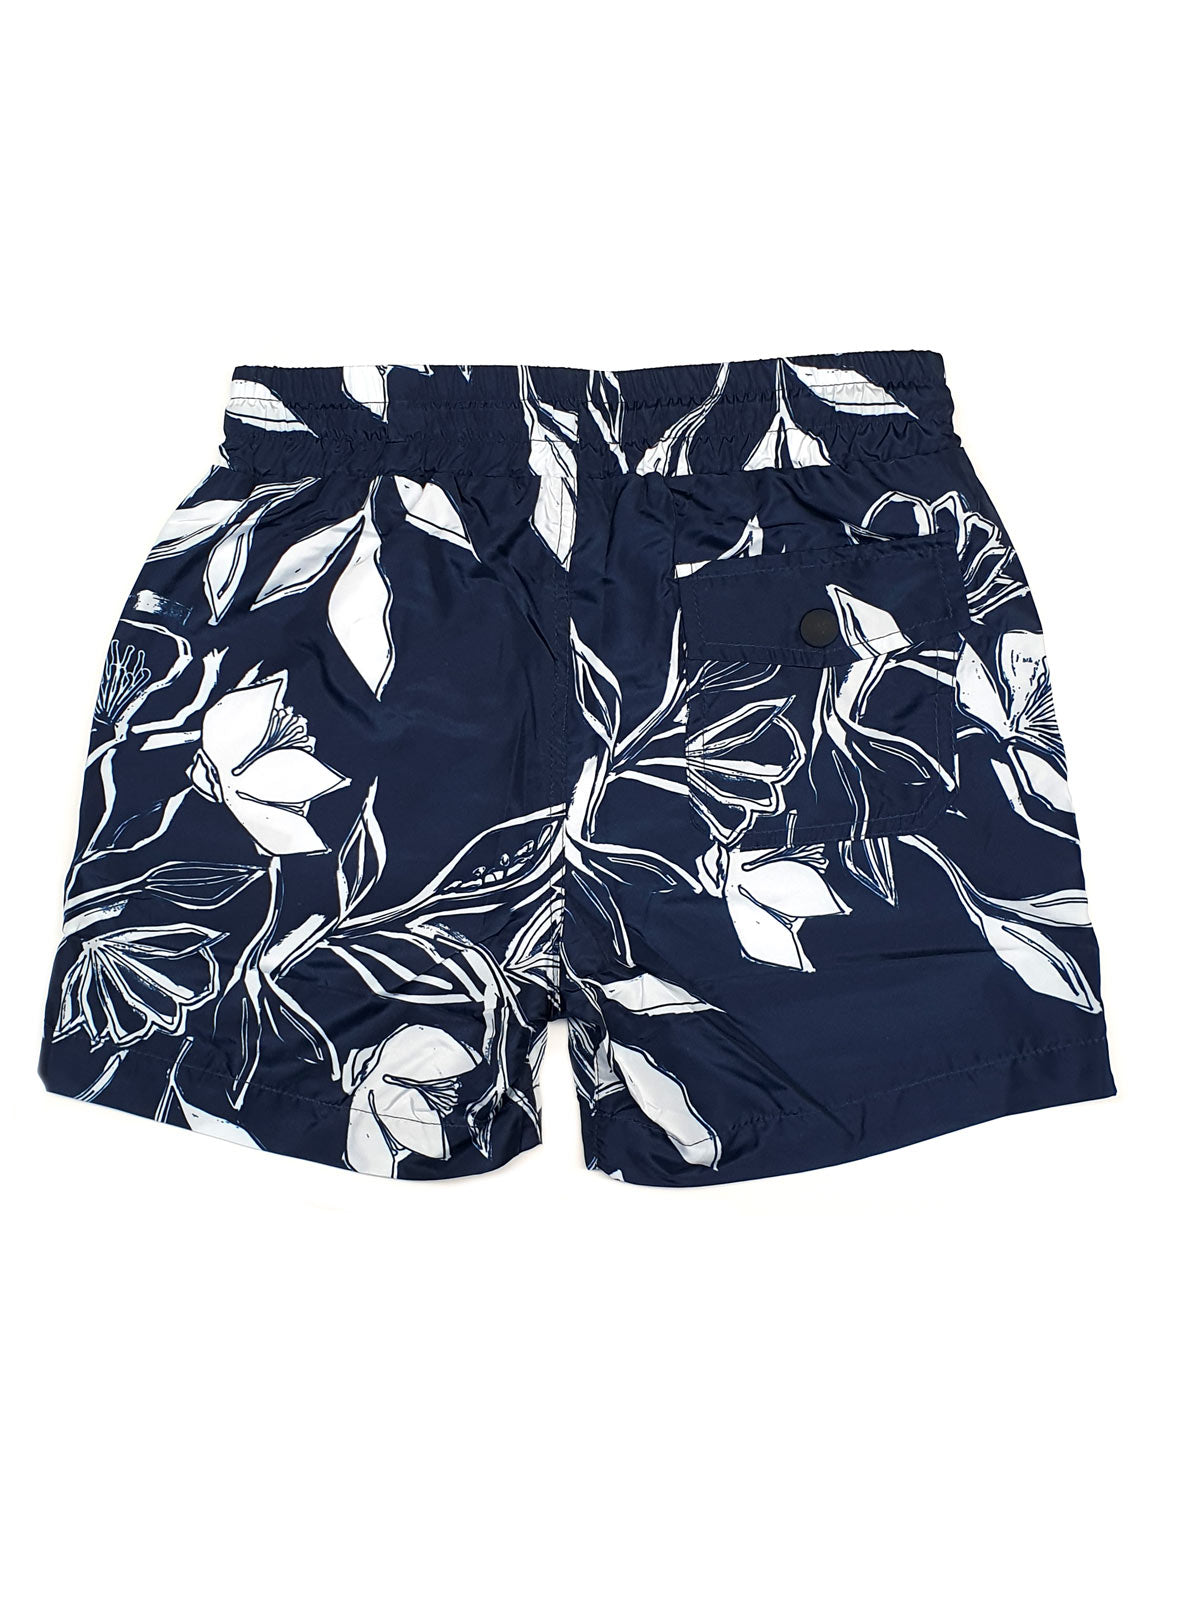 Antony Morato Boy's Swim shorts- Beachwear